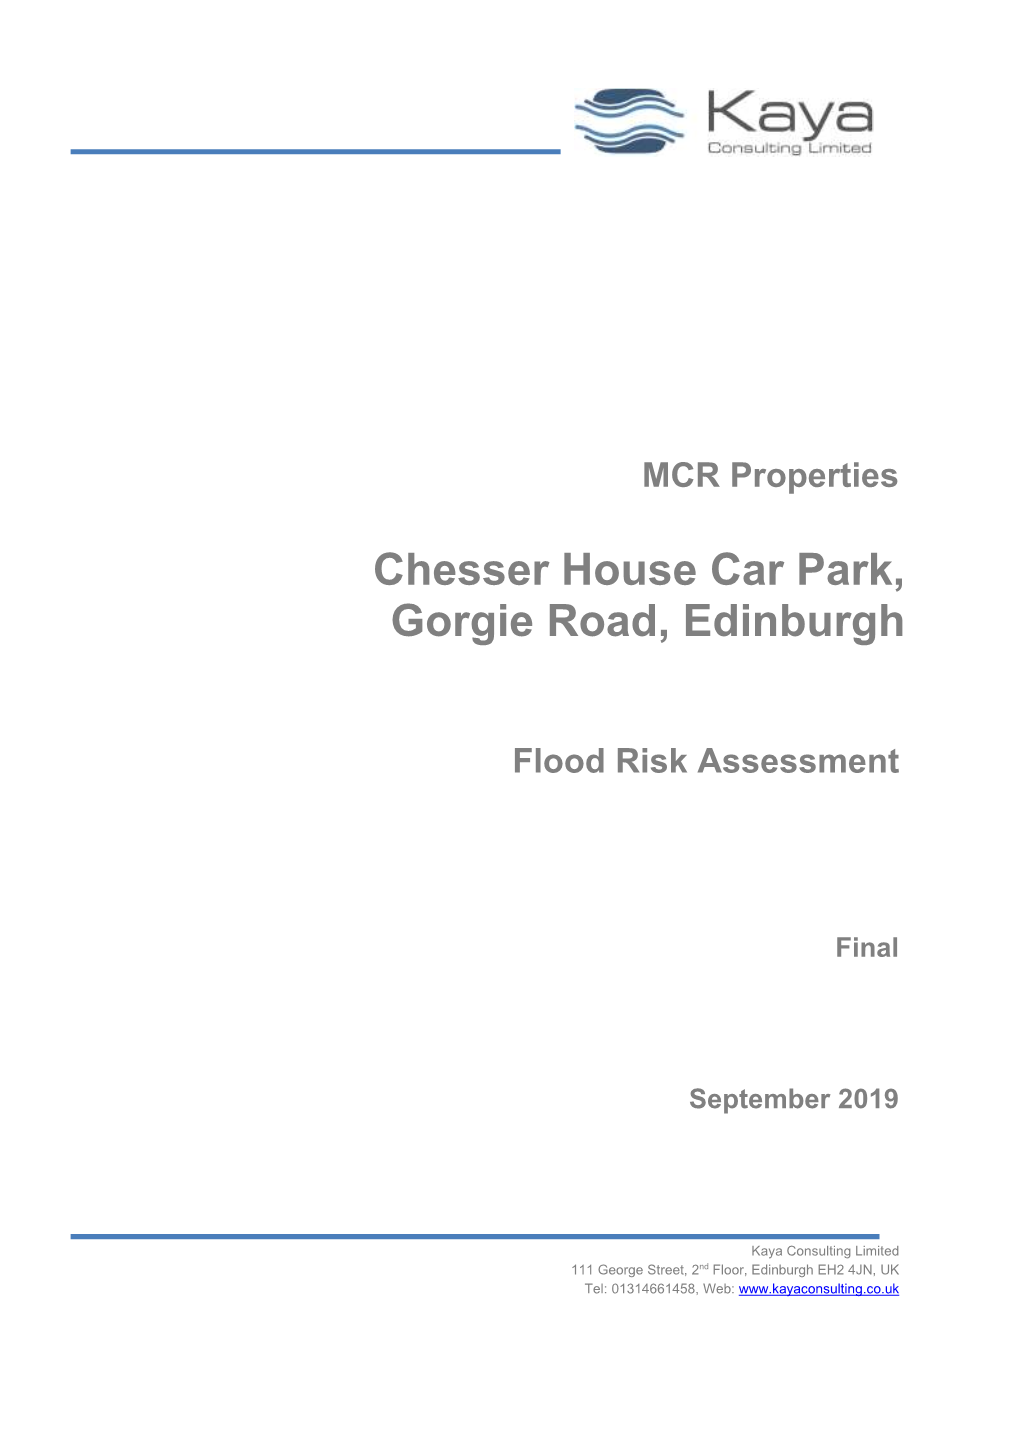 Flood Risk Assessment Report